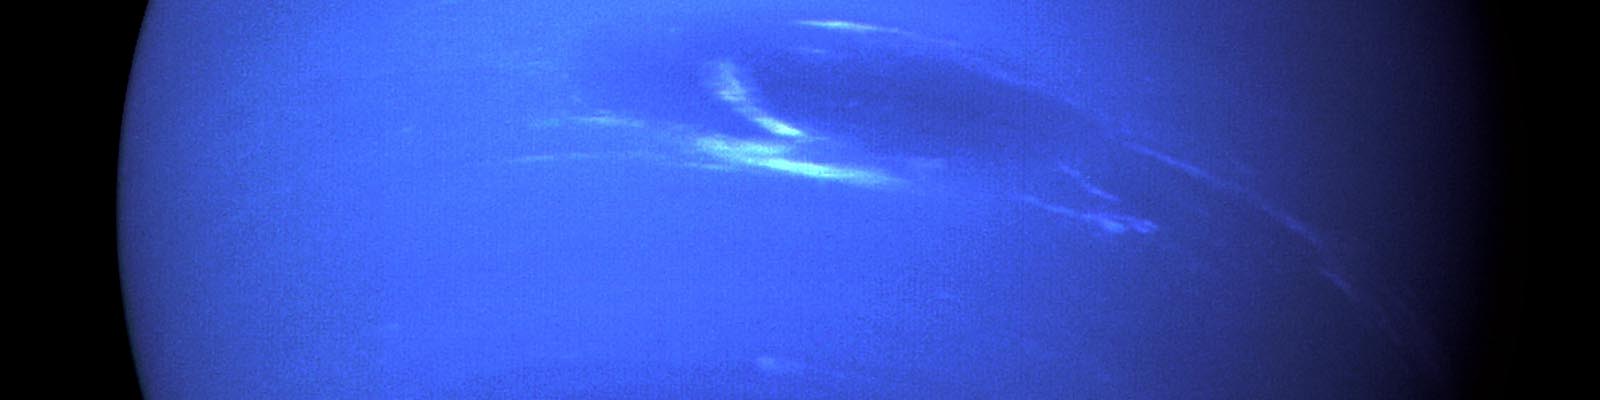 La planète Neptune vue par la sonde Voyager 2